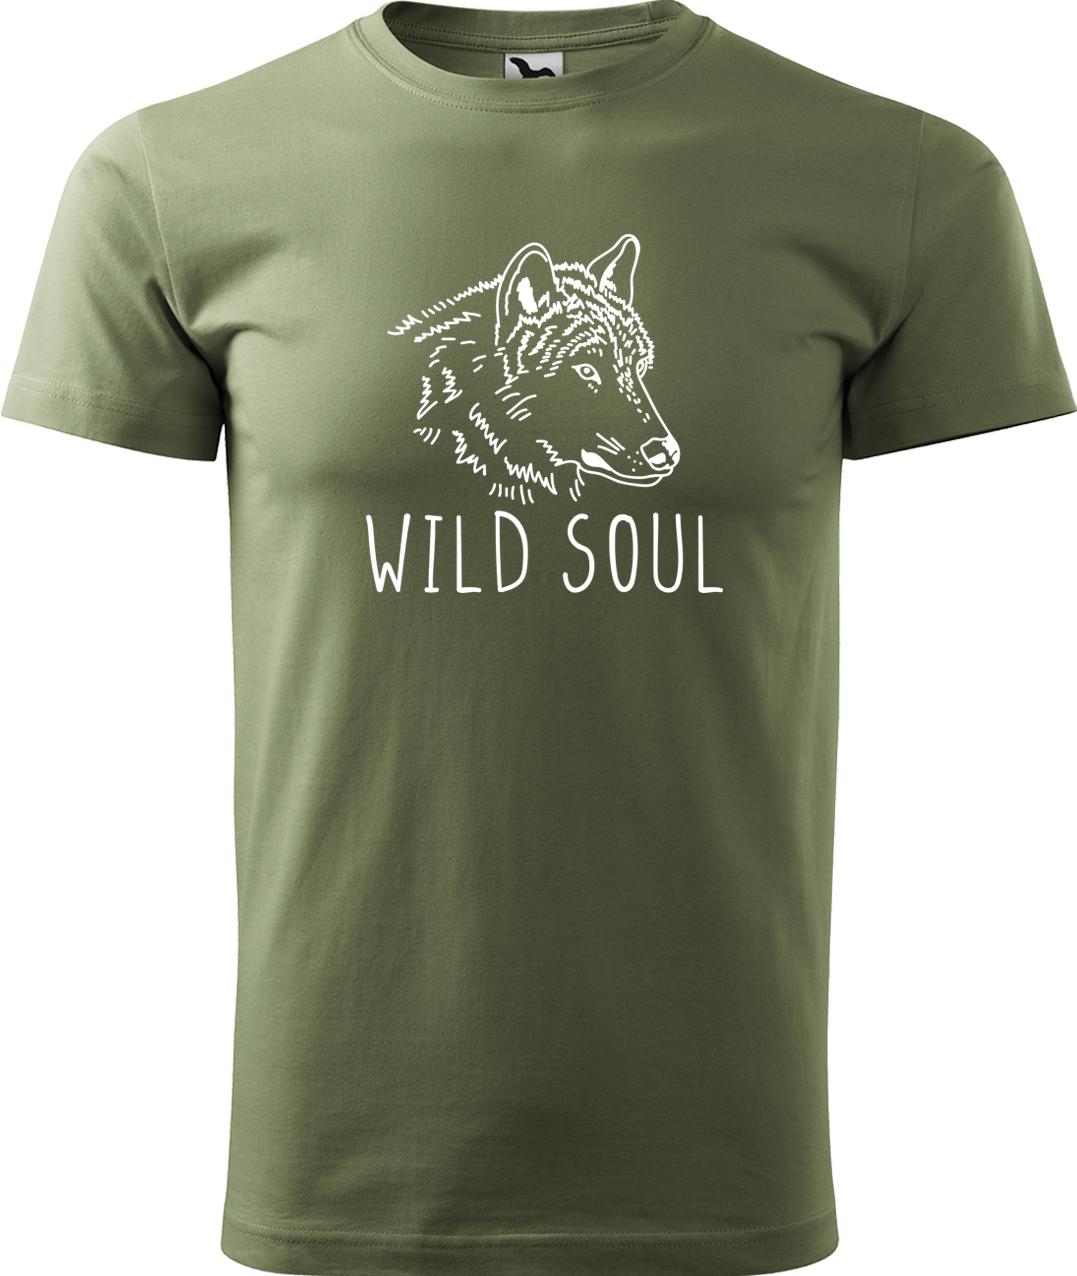 Pánské tričko s vlkem - Wild soul Velikost: M, Barva: Světlá khaki (28), Střih: pánský